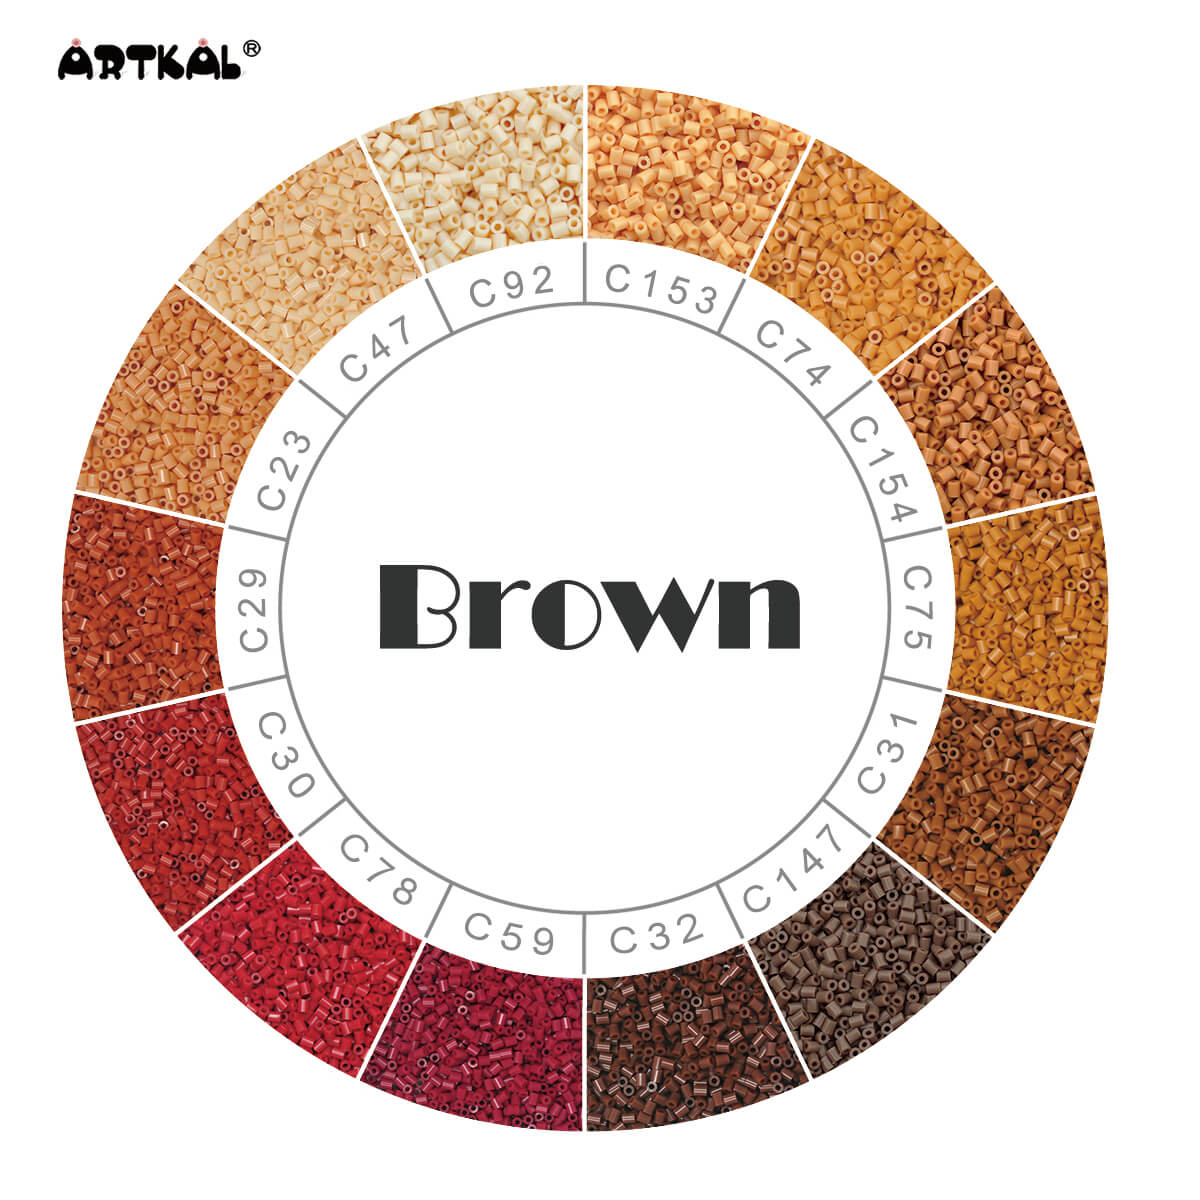 Artkal 36 Colors Midi Fuse Bead Kit (11,000 Beads)